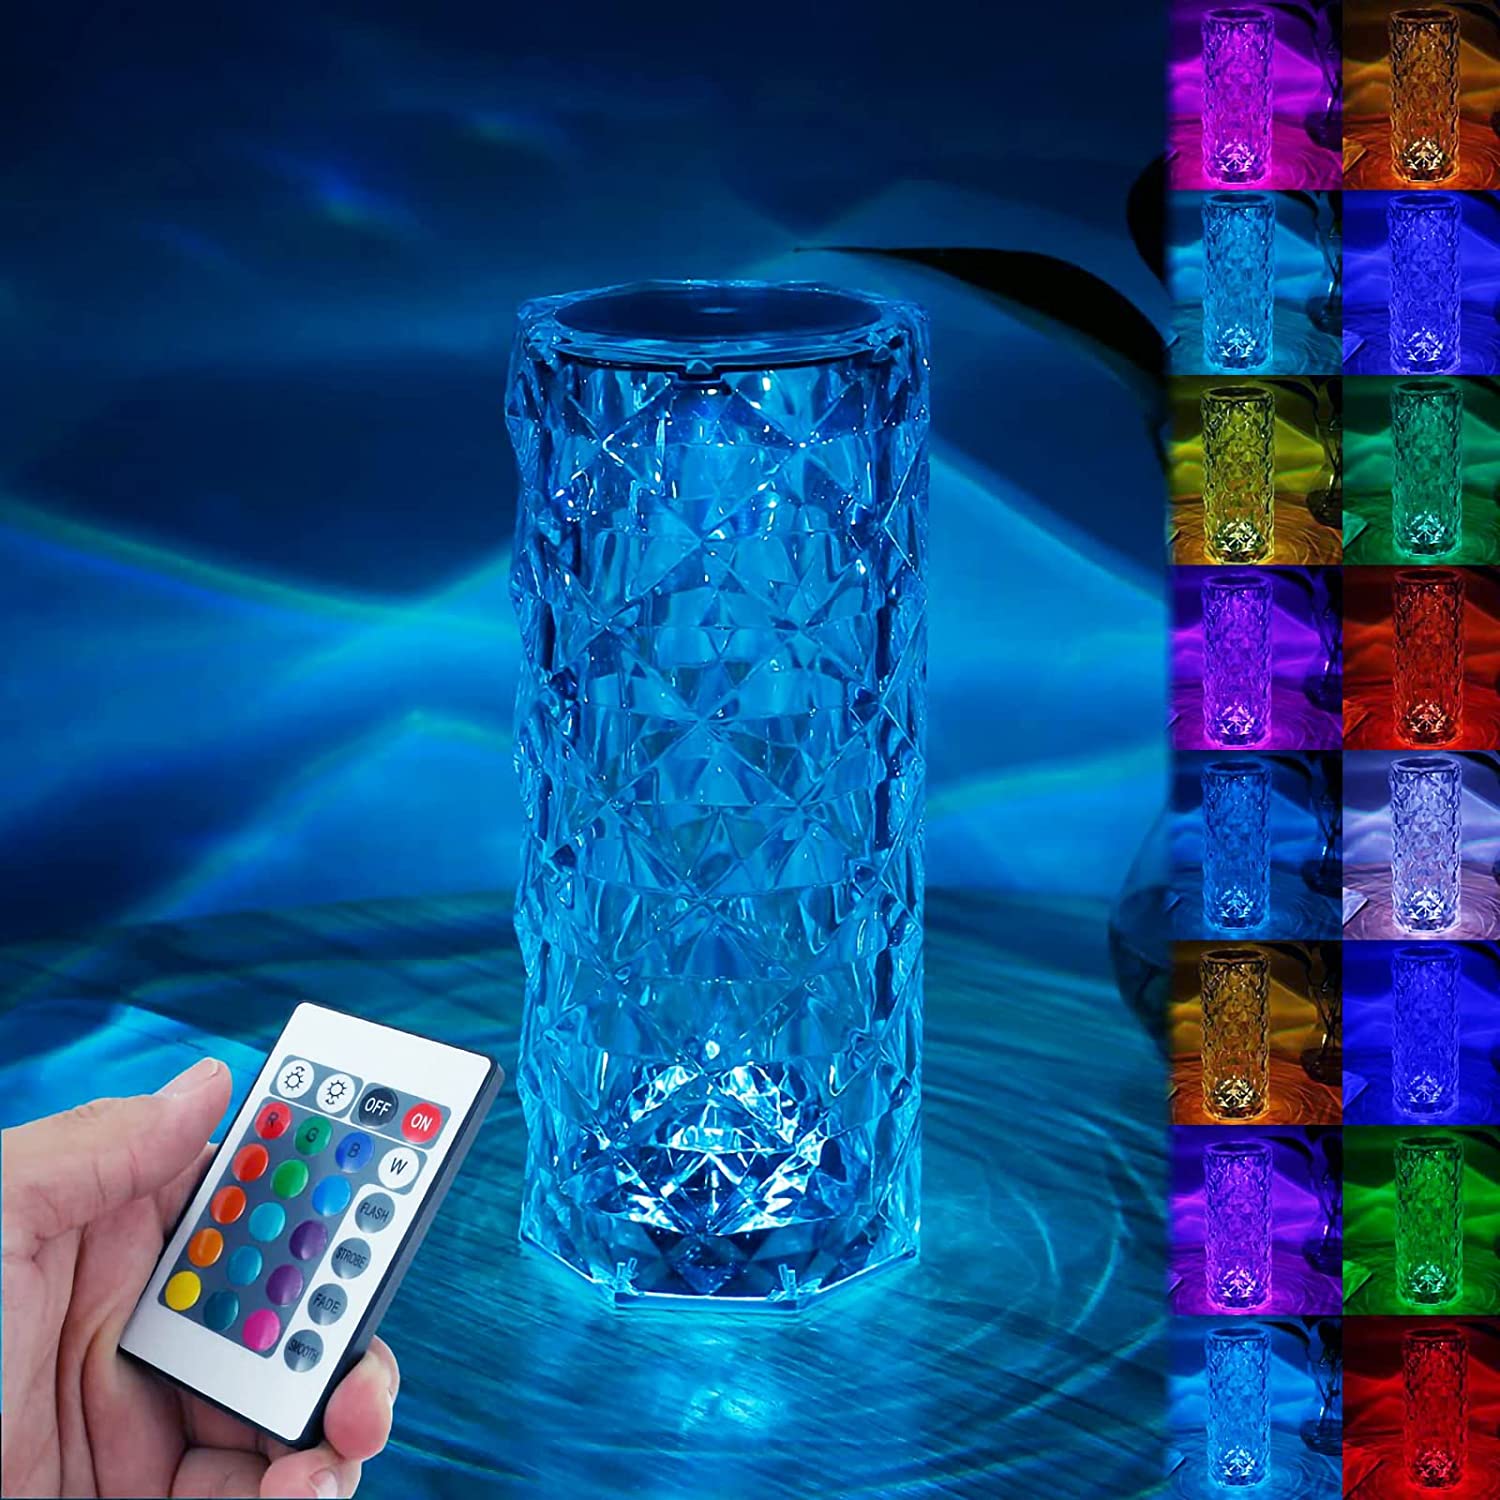 Lampe en cristal tactile 16 couleurs